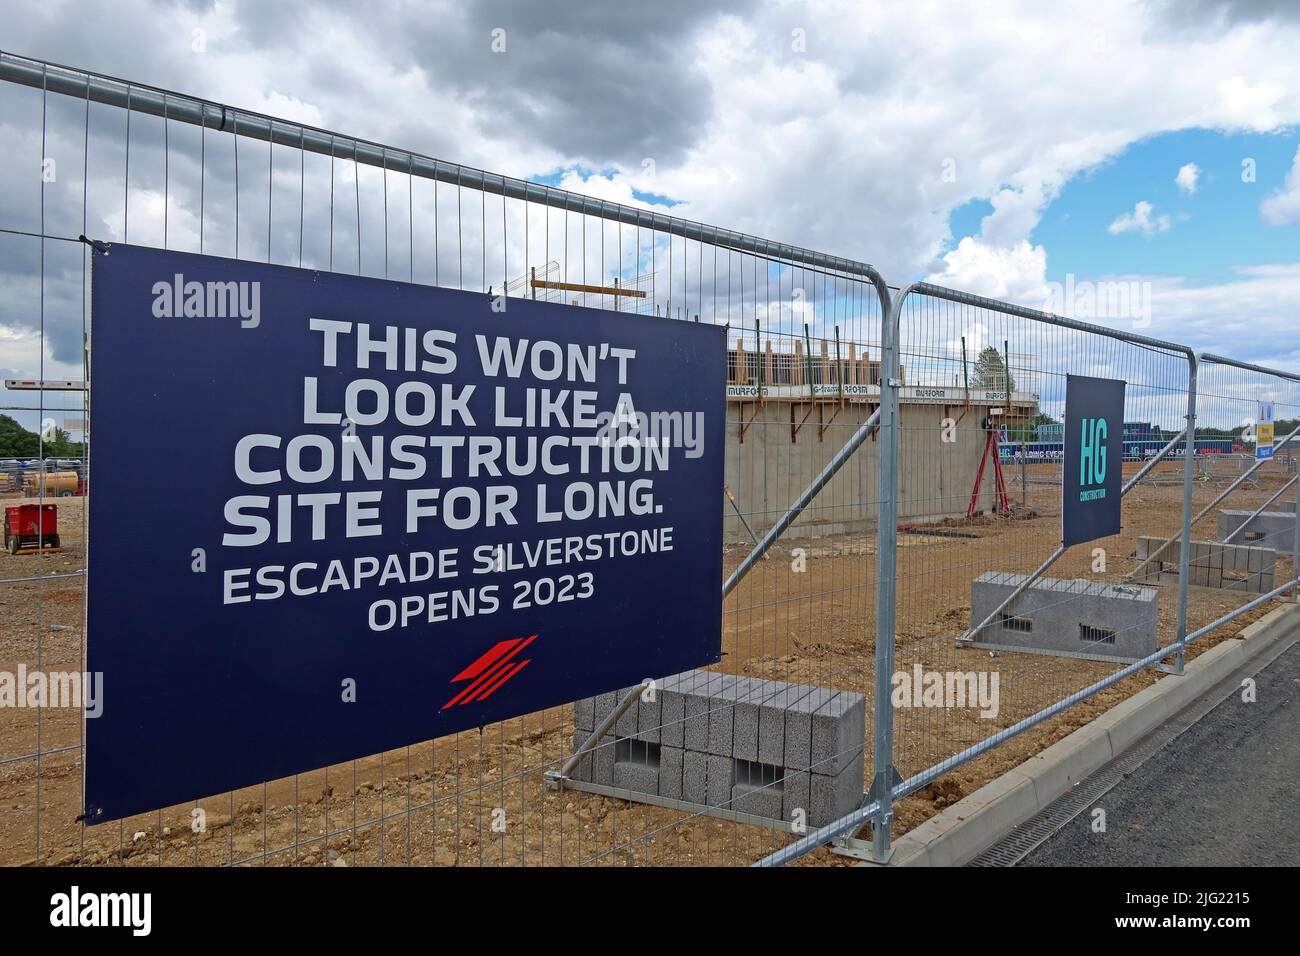 HG Construction Escapade , sur le site de Silverstone, circuit de Silverstone, Silverstone, Towcester, Northamptonshire, Angleterre, Royaume-Uni, NN12 8TL Banque D'Images